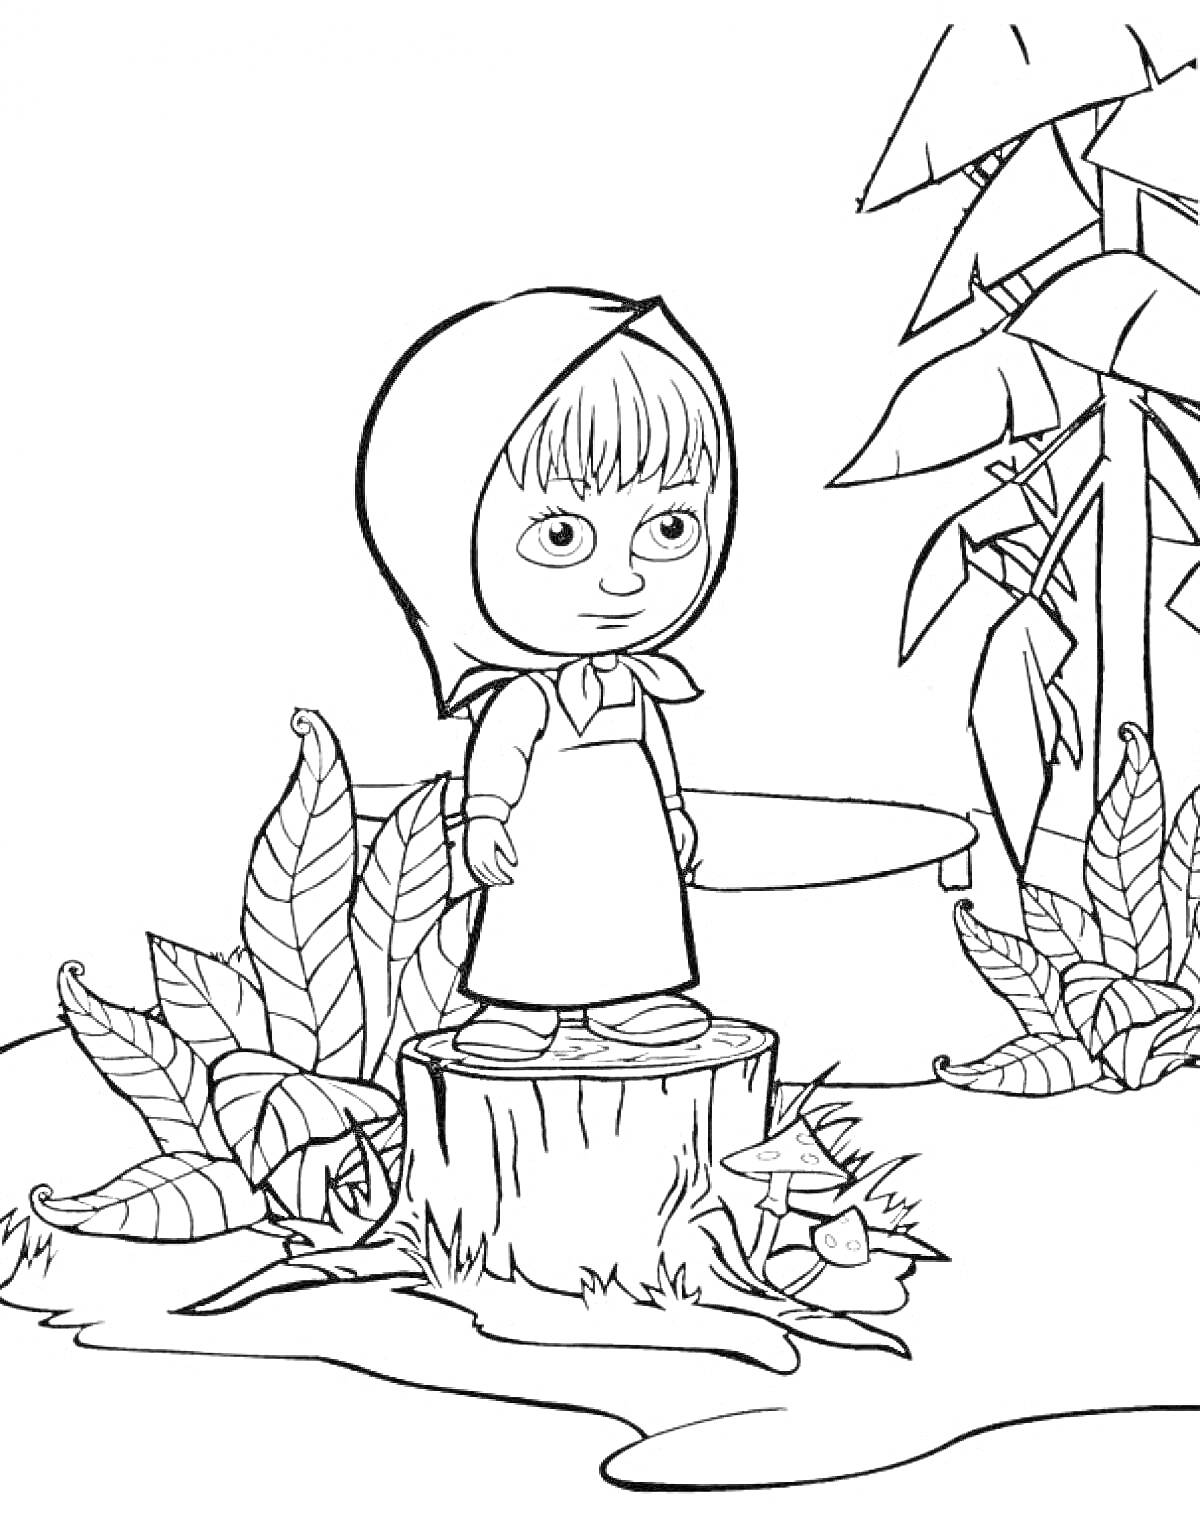 Маша стоит на пеньке, листья на земле, деревья на заднем плане